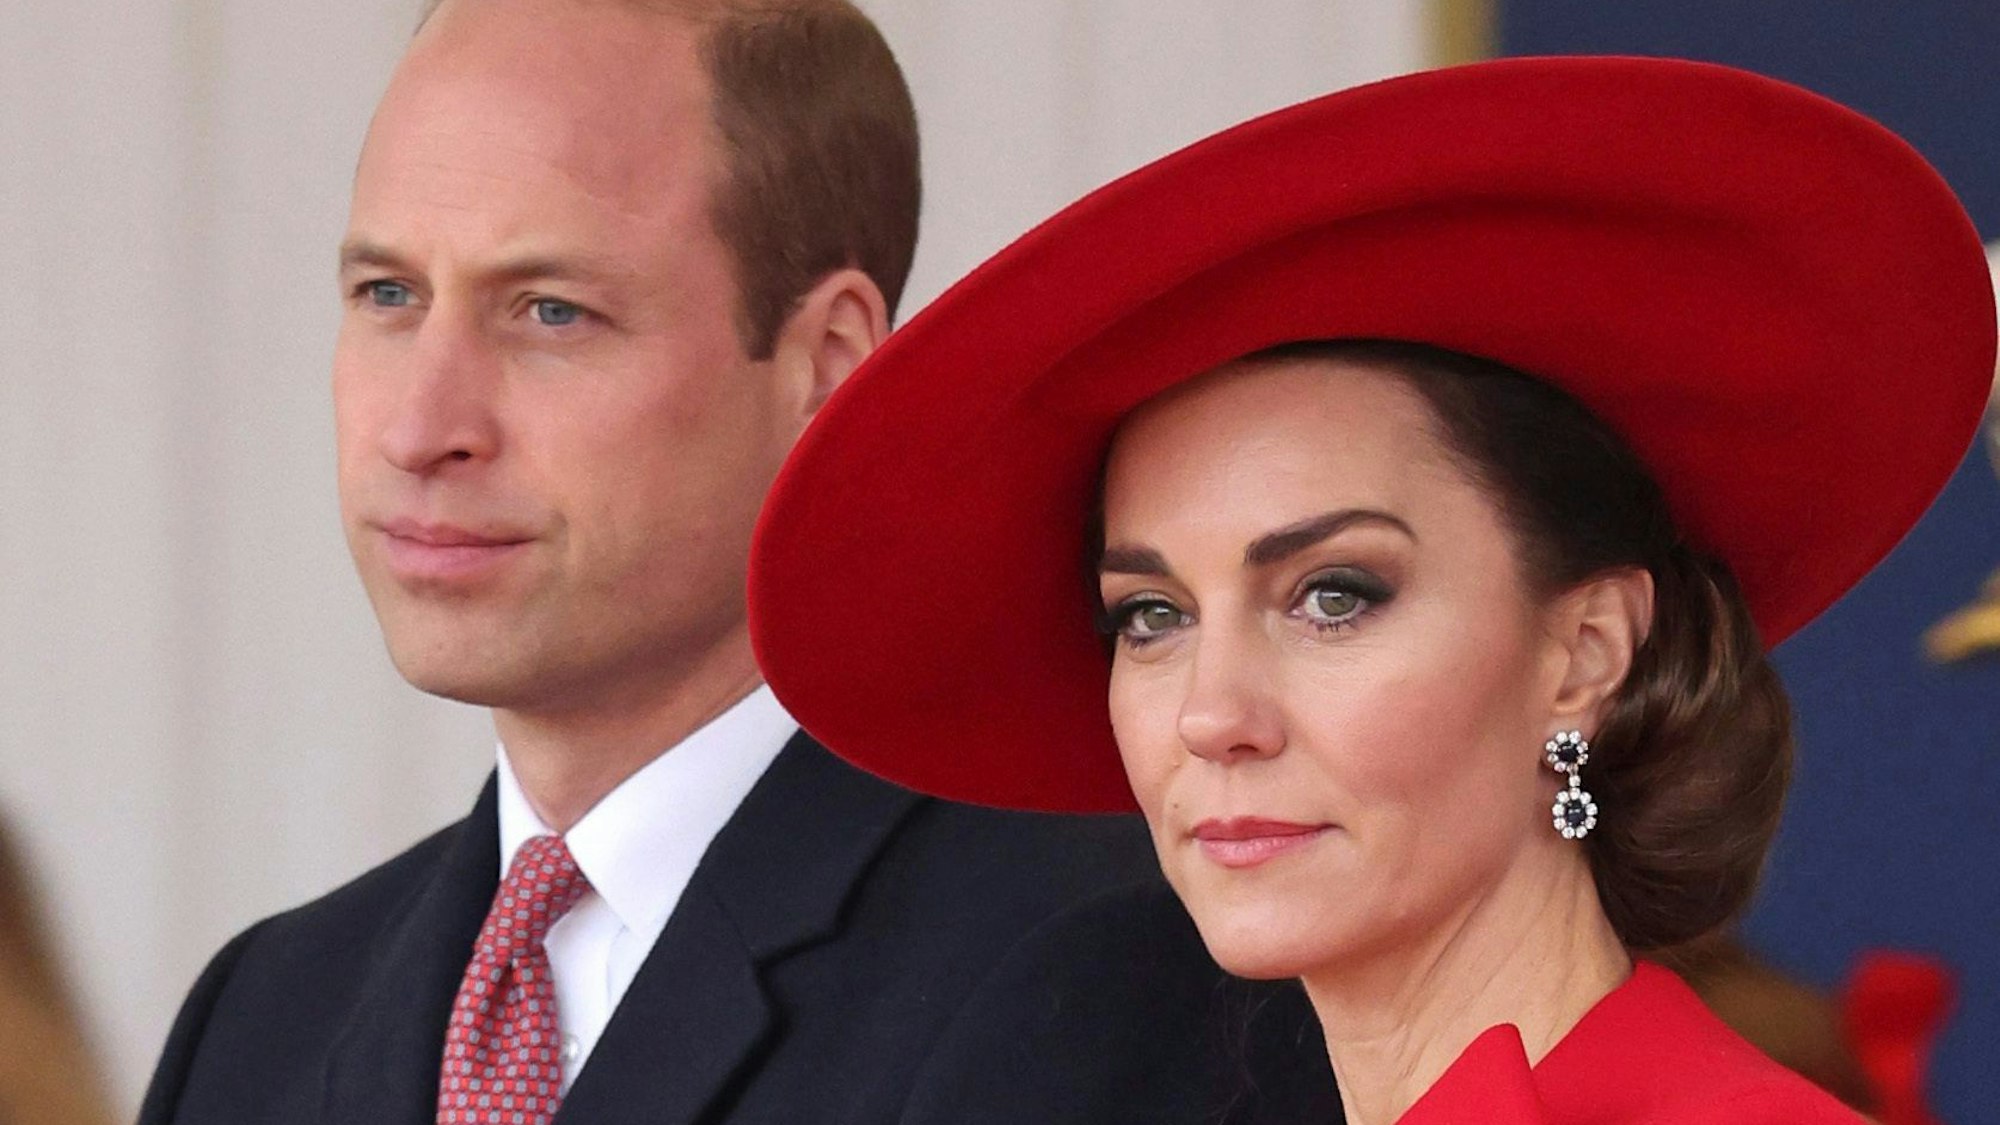 Kate, Prinzessin von Wales, und William, Prinz von Wales, nehmen an einer Feier teil. (Archivbild)